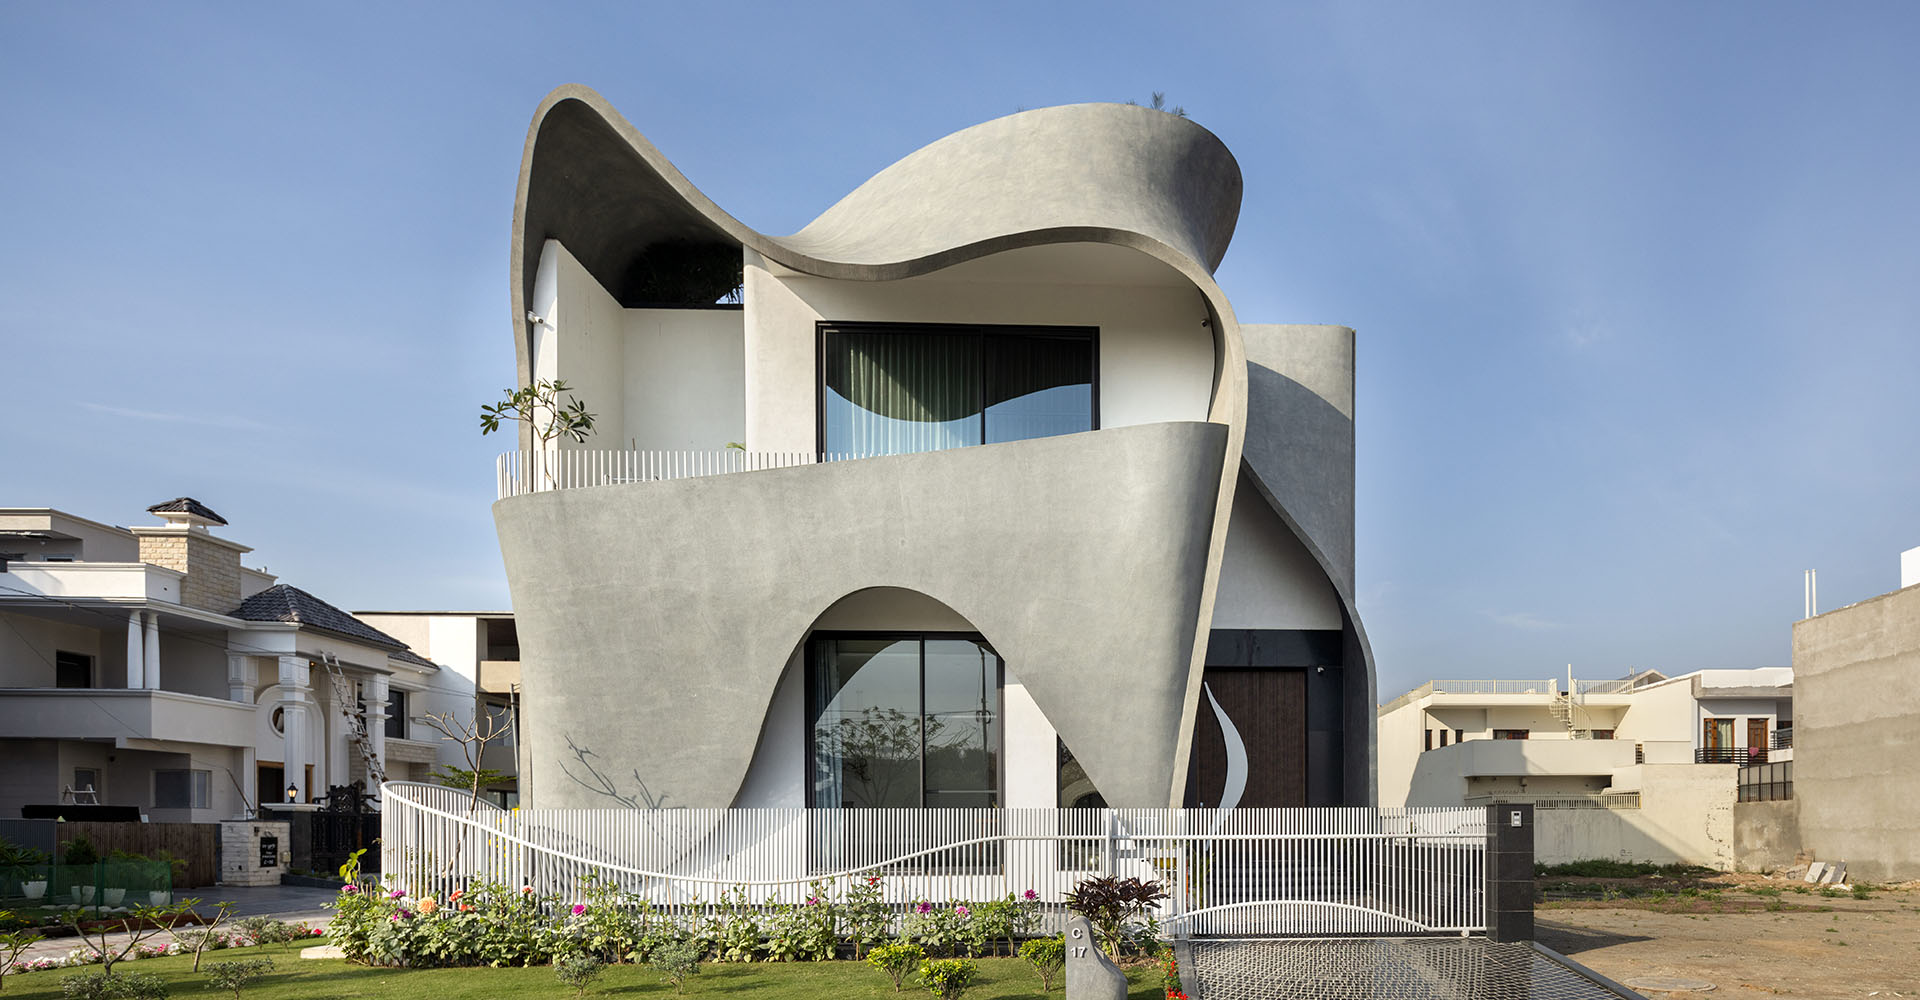 The Ribbon House - зачем архитекторы обвили фасад частного дома в Индии бетонной лентой?